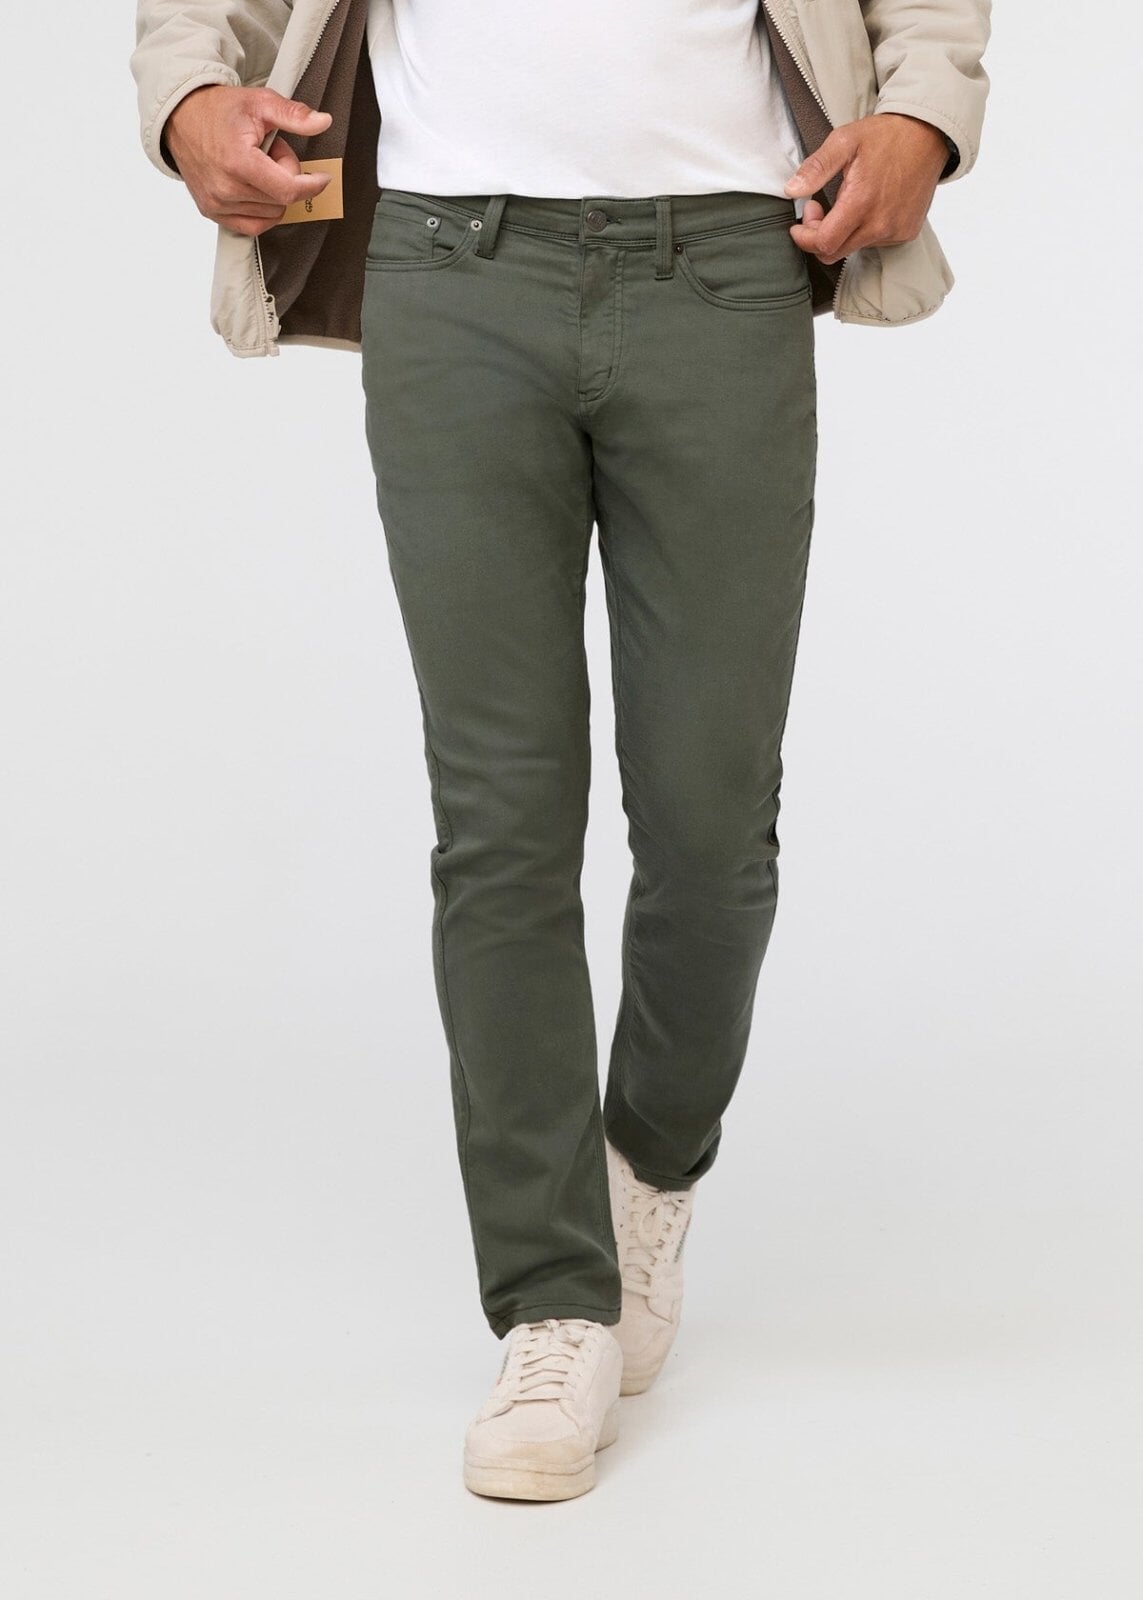 Desert Khaki $ 135 - Modal cashmere leggings - DUER Men's No Sweat Relaxed  Taper Pants